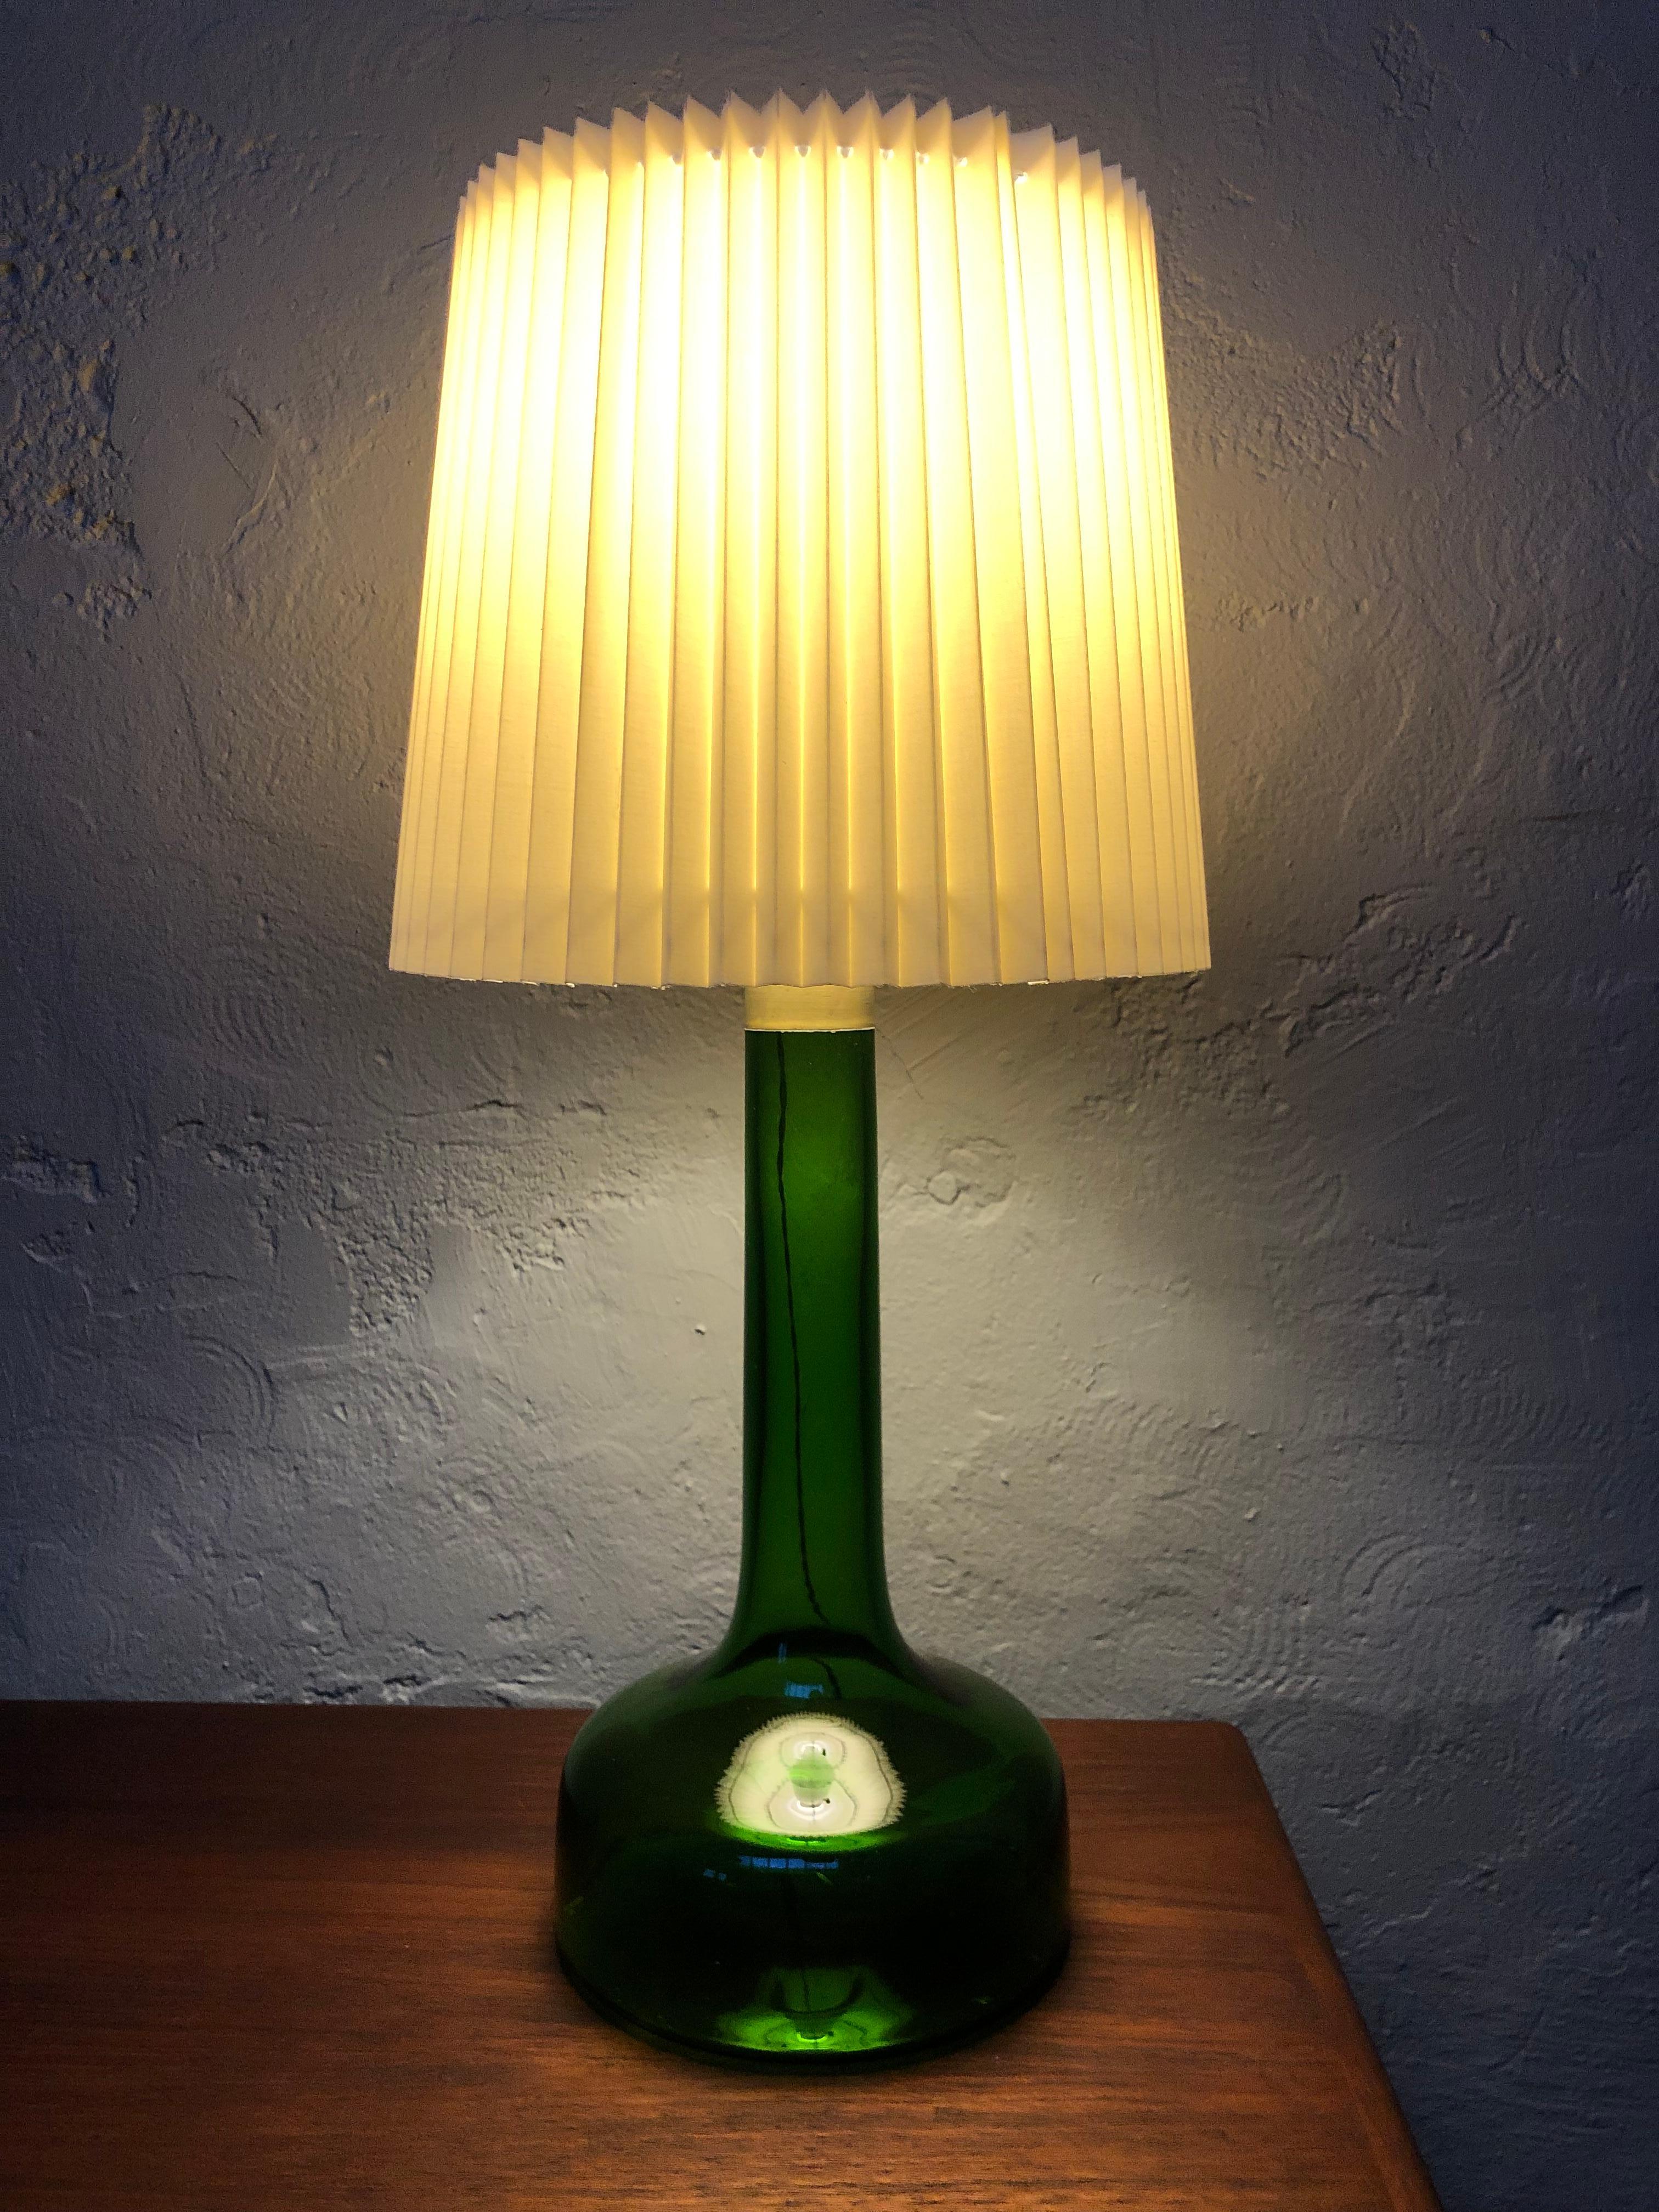 Eine Vintage-Tischlampe aus mundgeblasenem Glas, entworfen von Biilman-Petersen für Le Klint aus Dänemark im Jahr 1948. 
Das grüne Glas ist in tollem Vintage-Zustand mit etwas leichtem Staub im Inneren der Lampe. 
Sie wurde mit verdrilltem